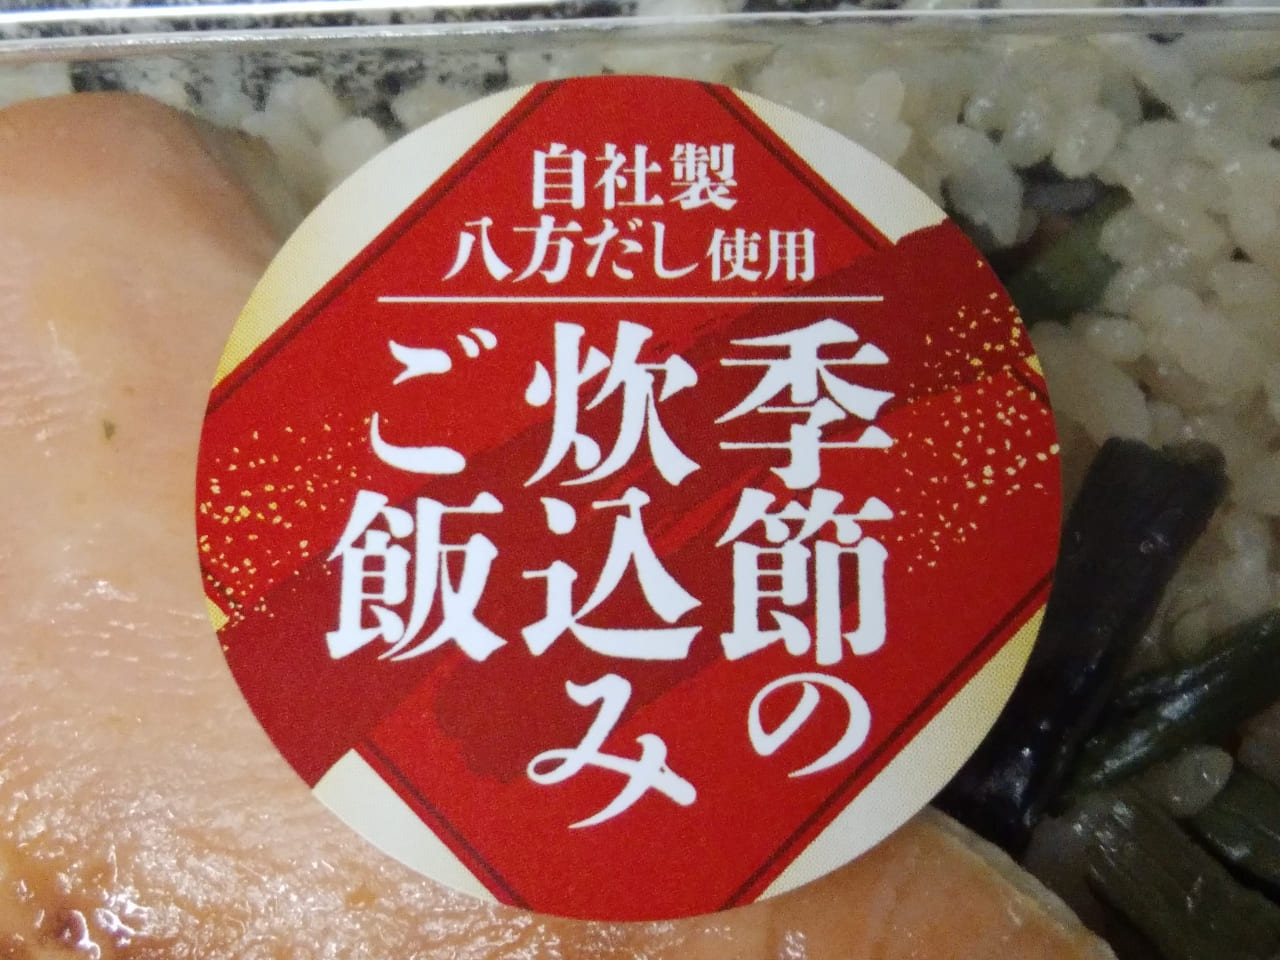 銀鮭西京味噌焼わらび弁当に貼られたシール